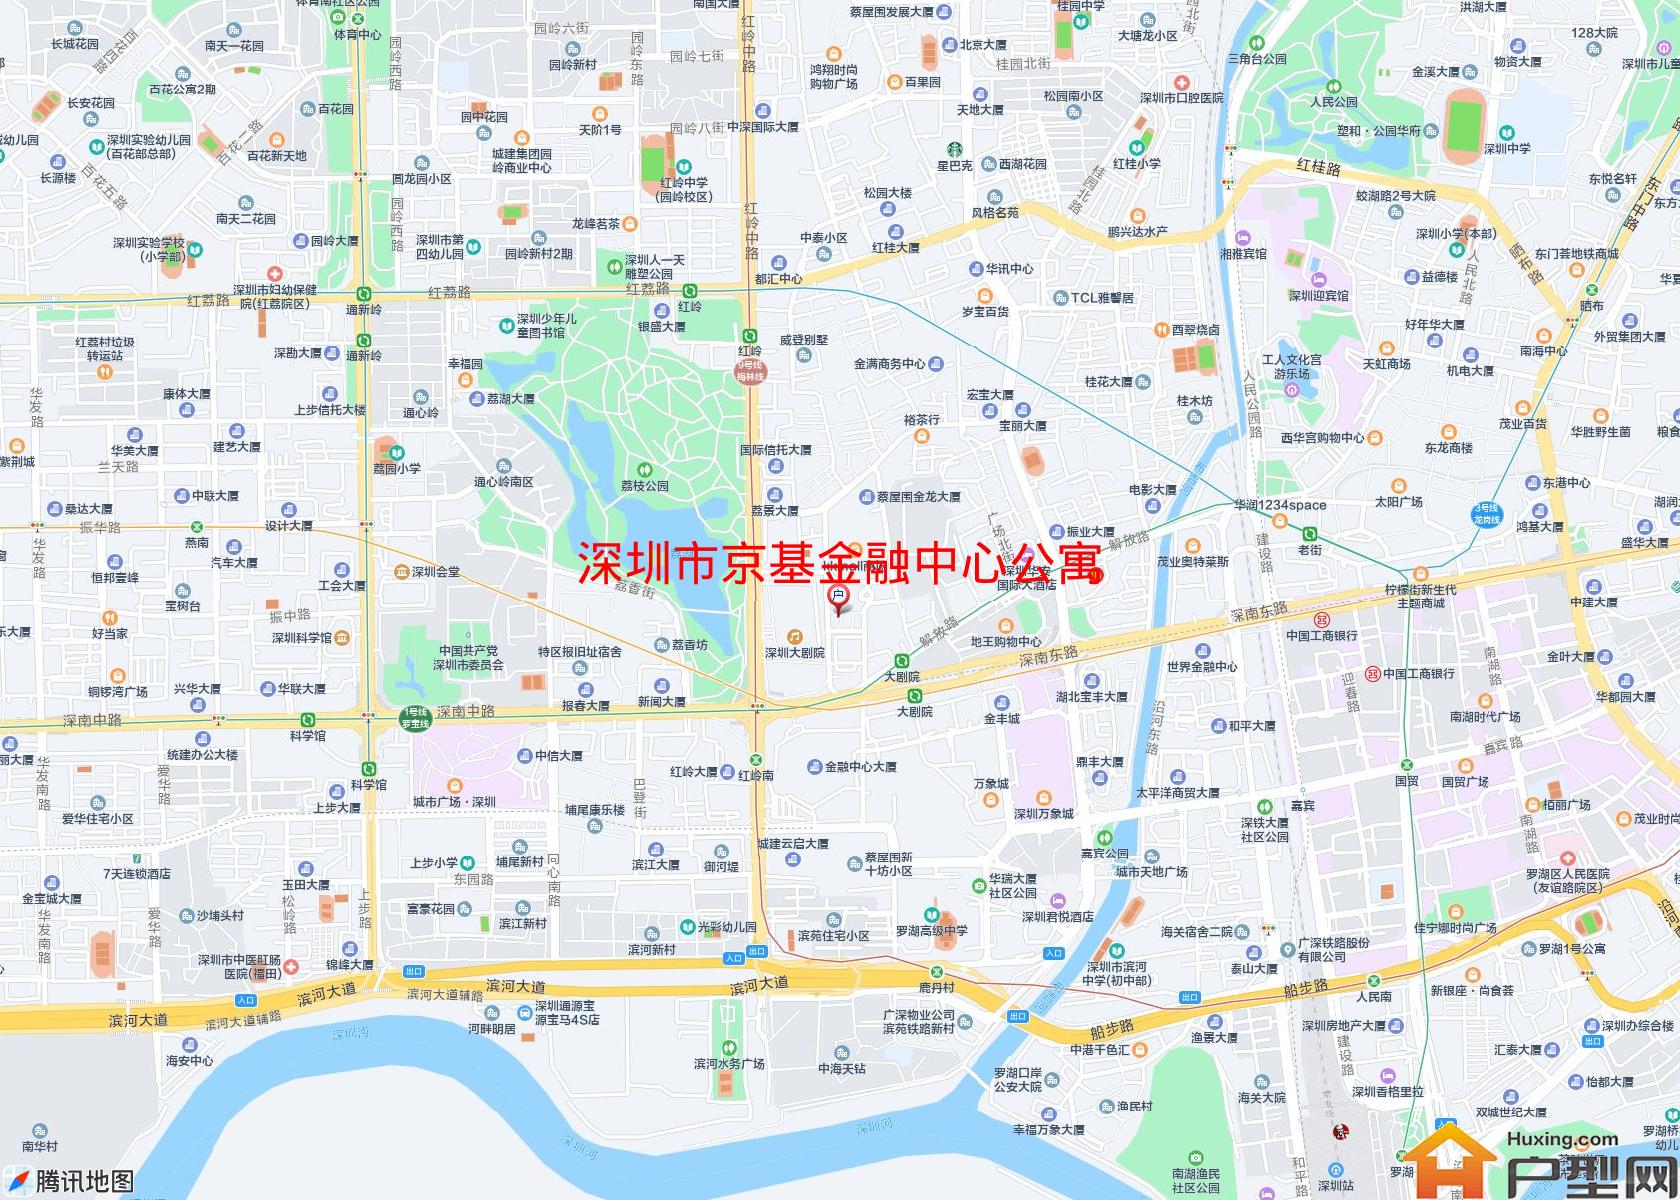 京基金融中心公寓小区 - 户型网